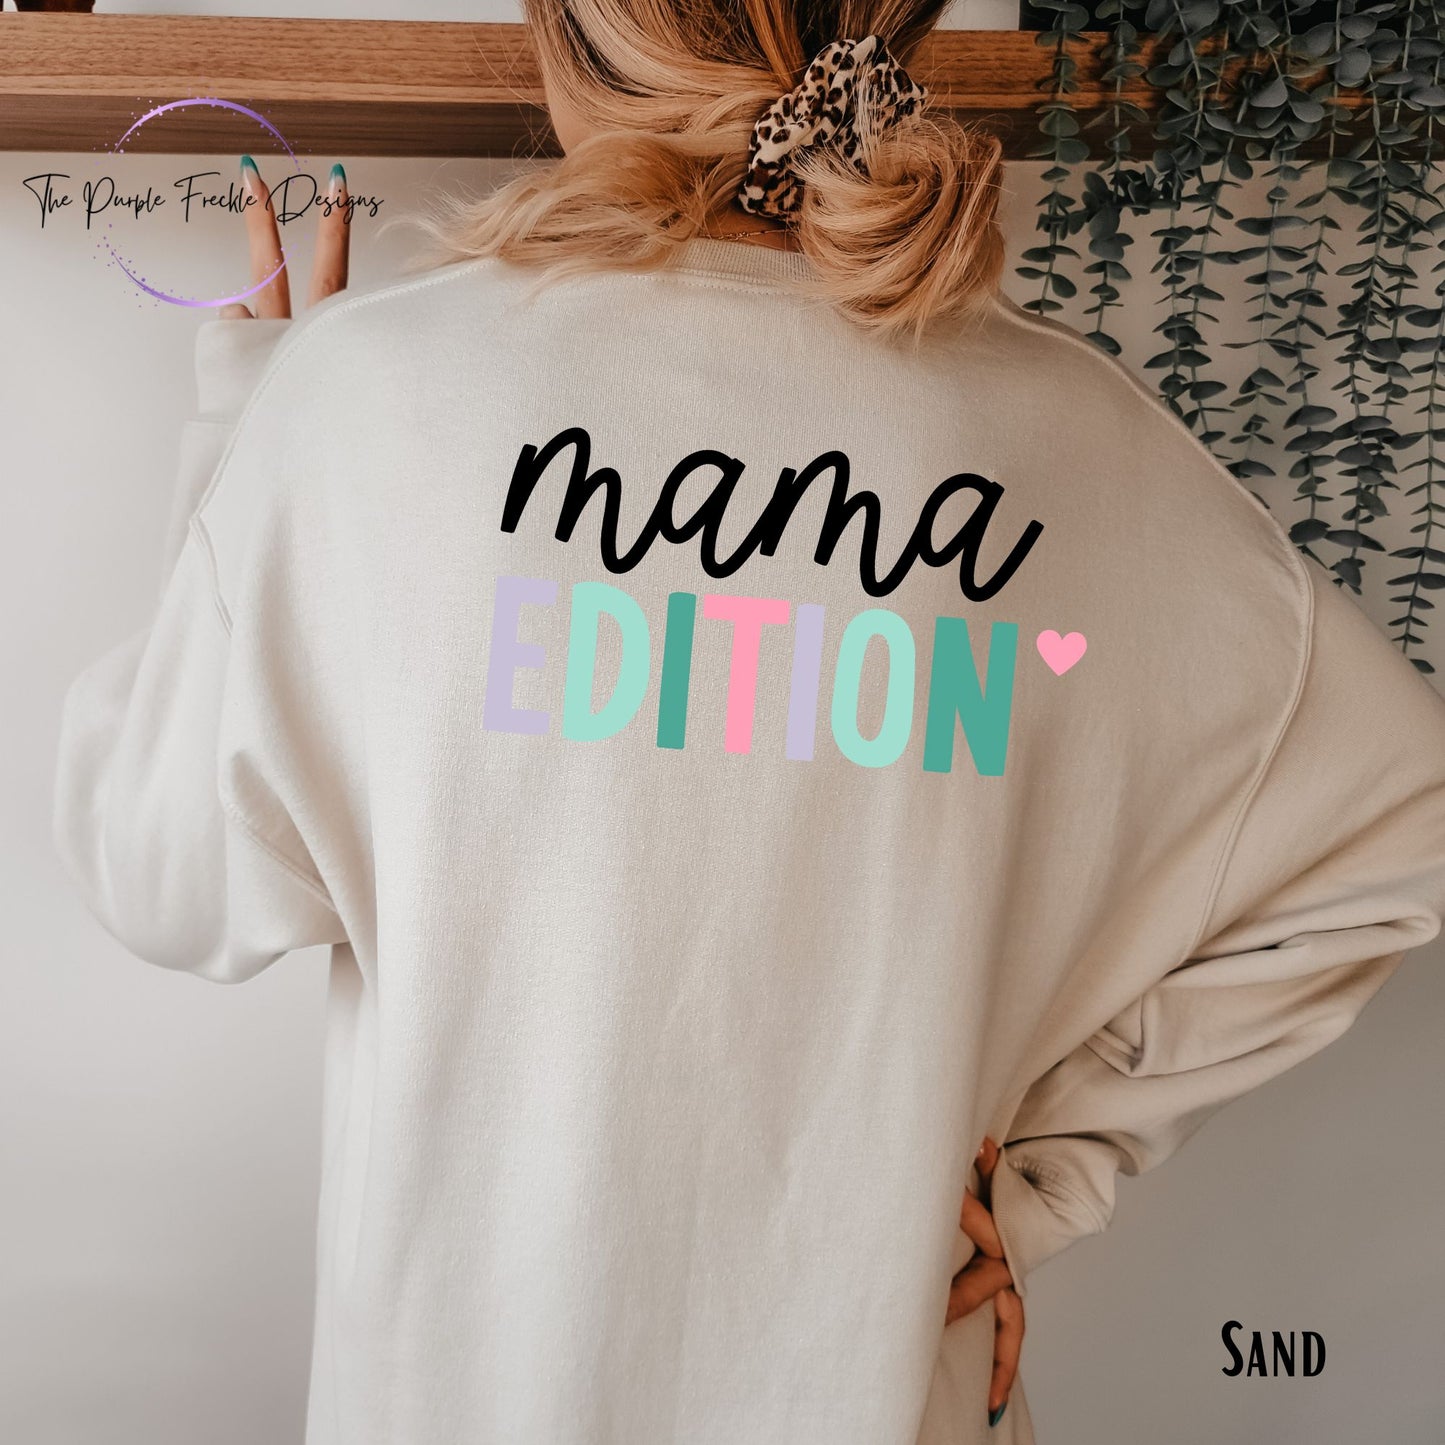 Mama Edition